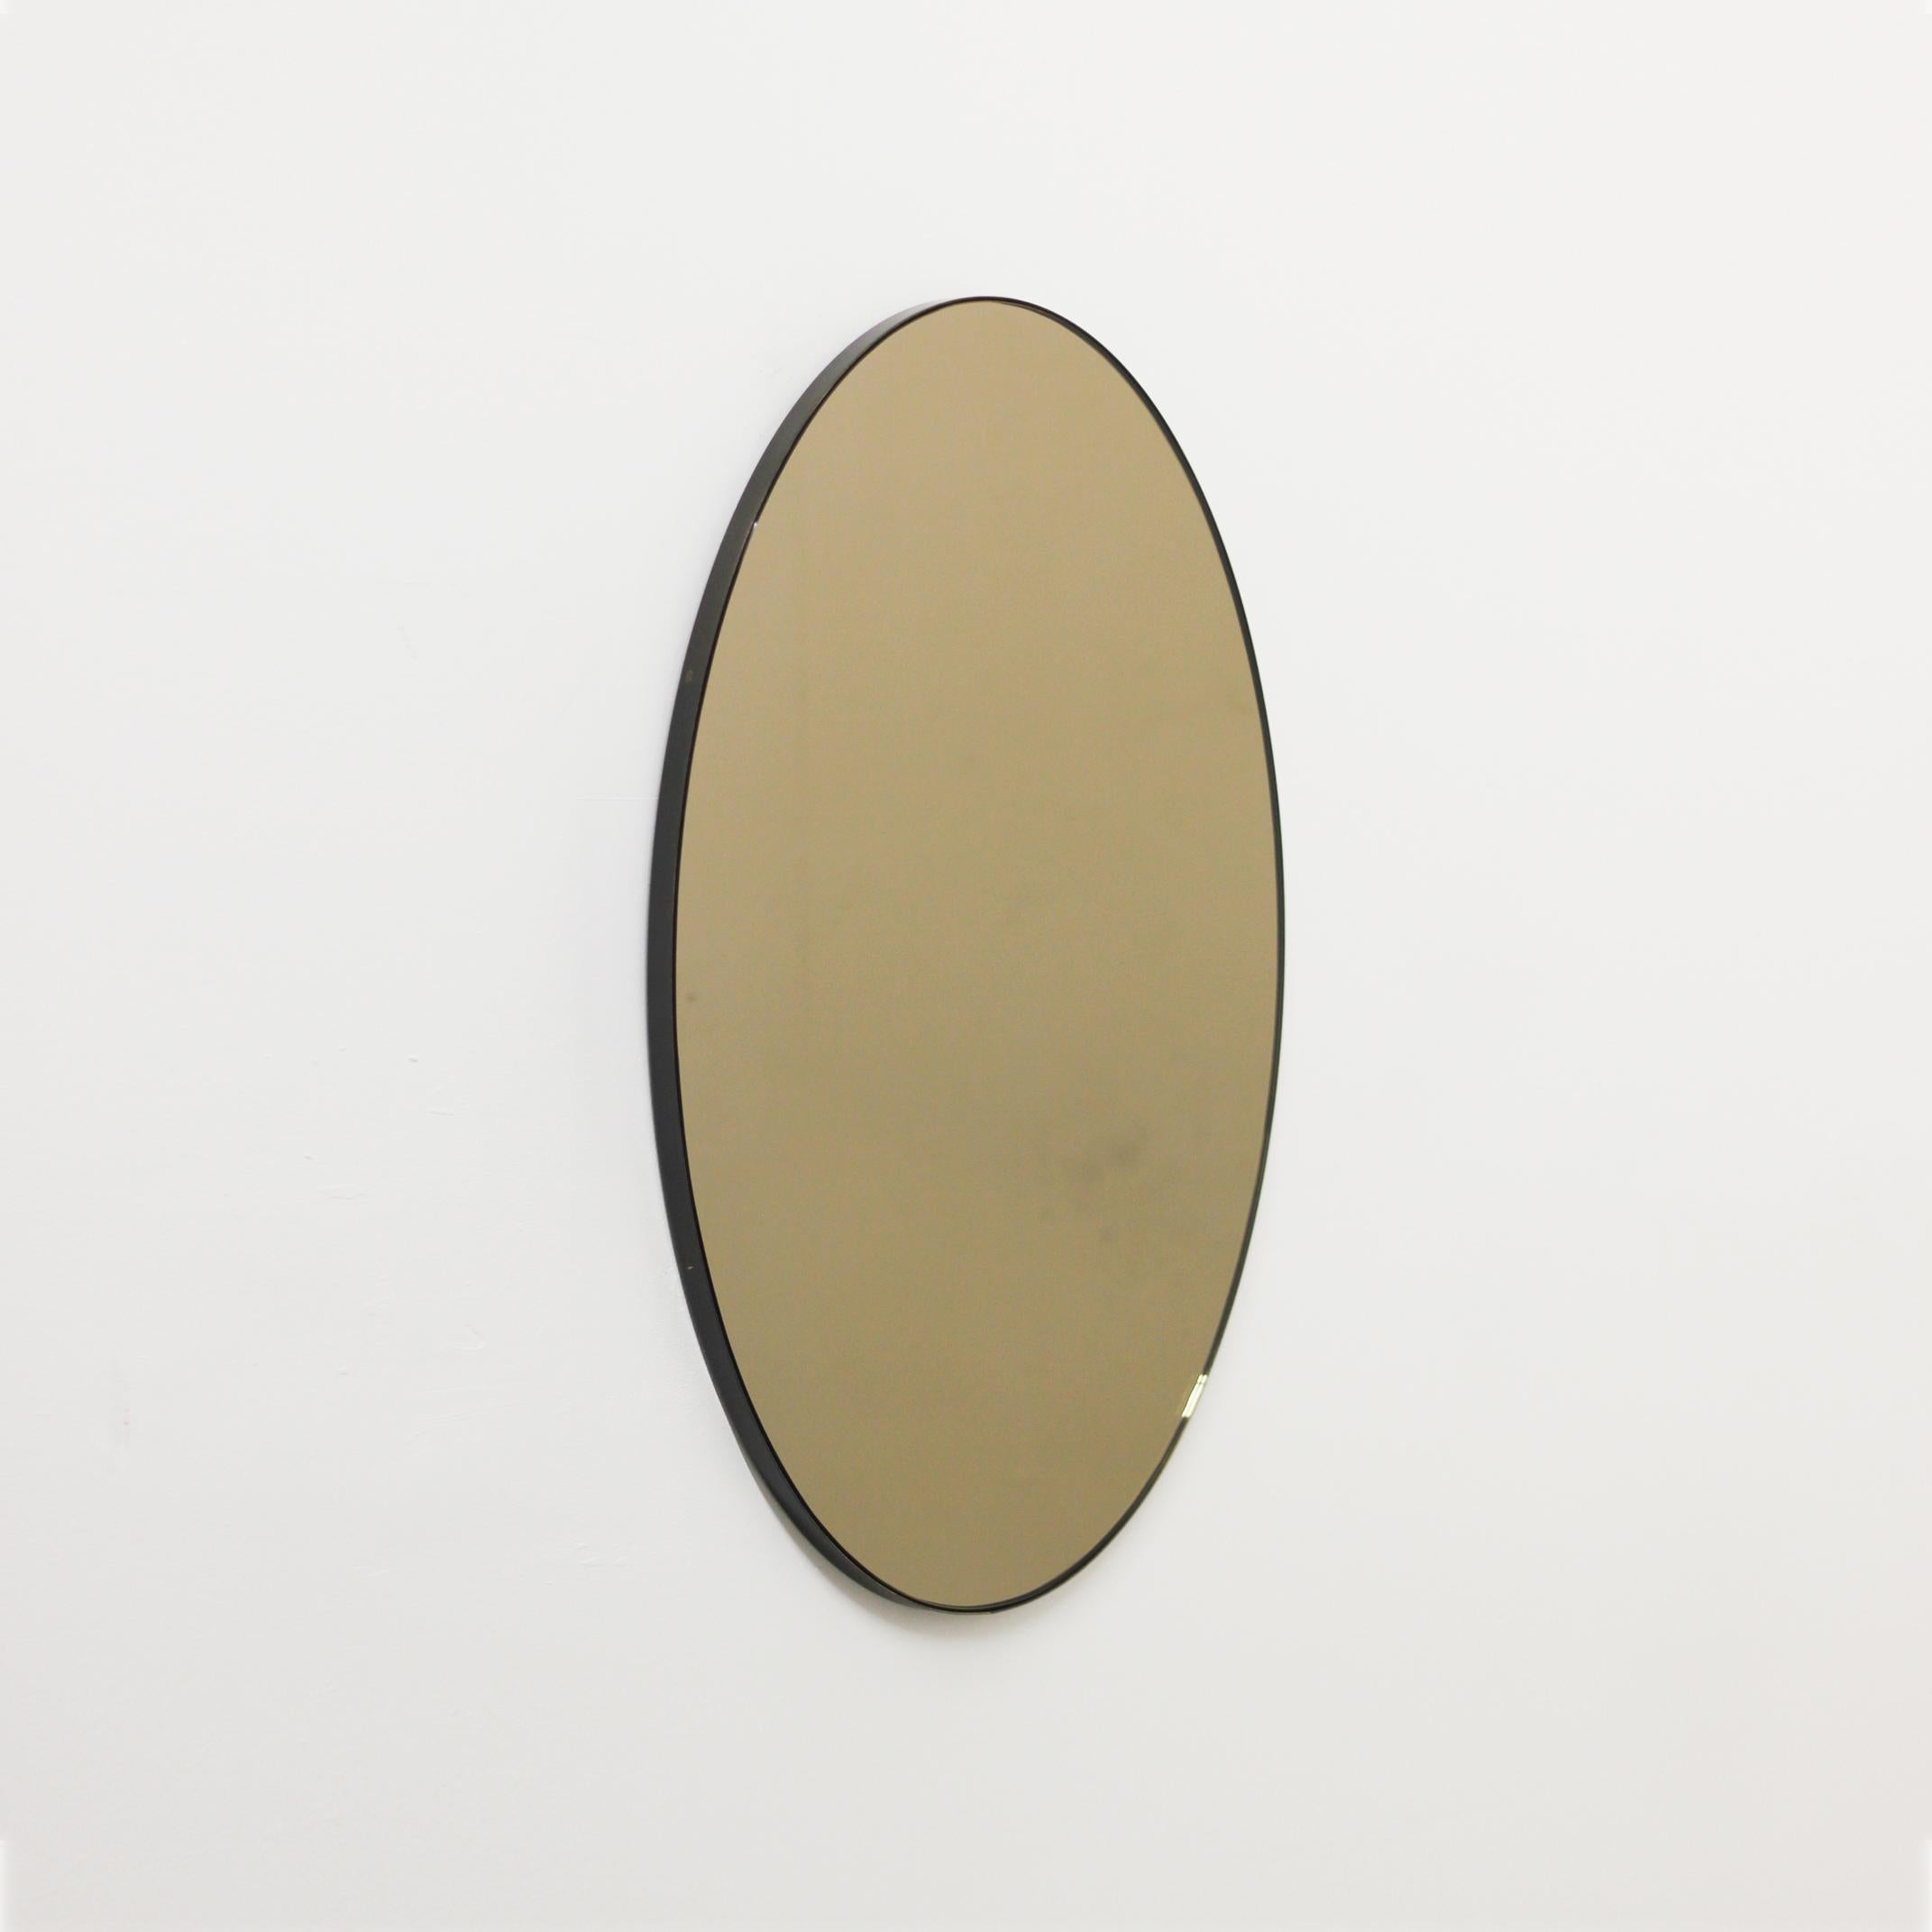 Miroir contemporain ovale teinté bronze avec un élégant cadre en laiton massif patiné bronze. Conçu et fabriqué à la main à Londres, au Royaume-Uni.

Nos miroirs sont conçus avec un système intégré de tasseaux français (lattes fendues) qui garantit